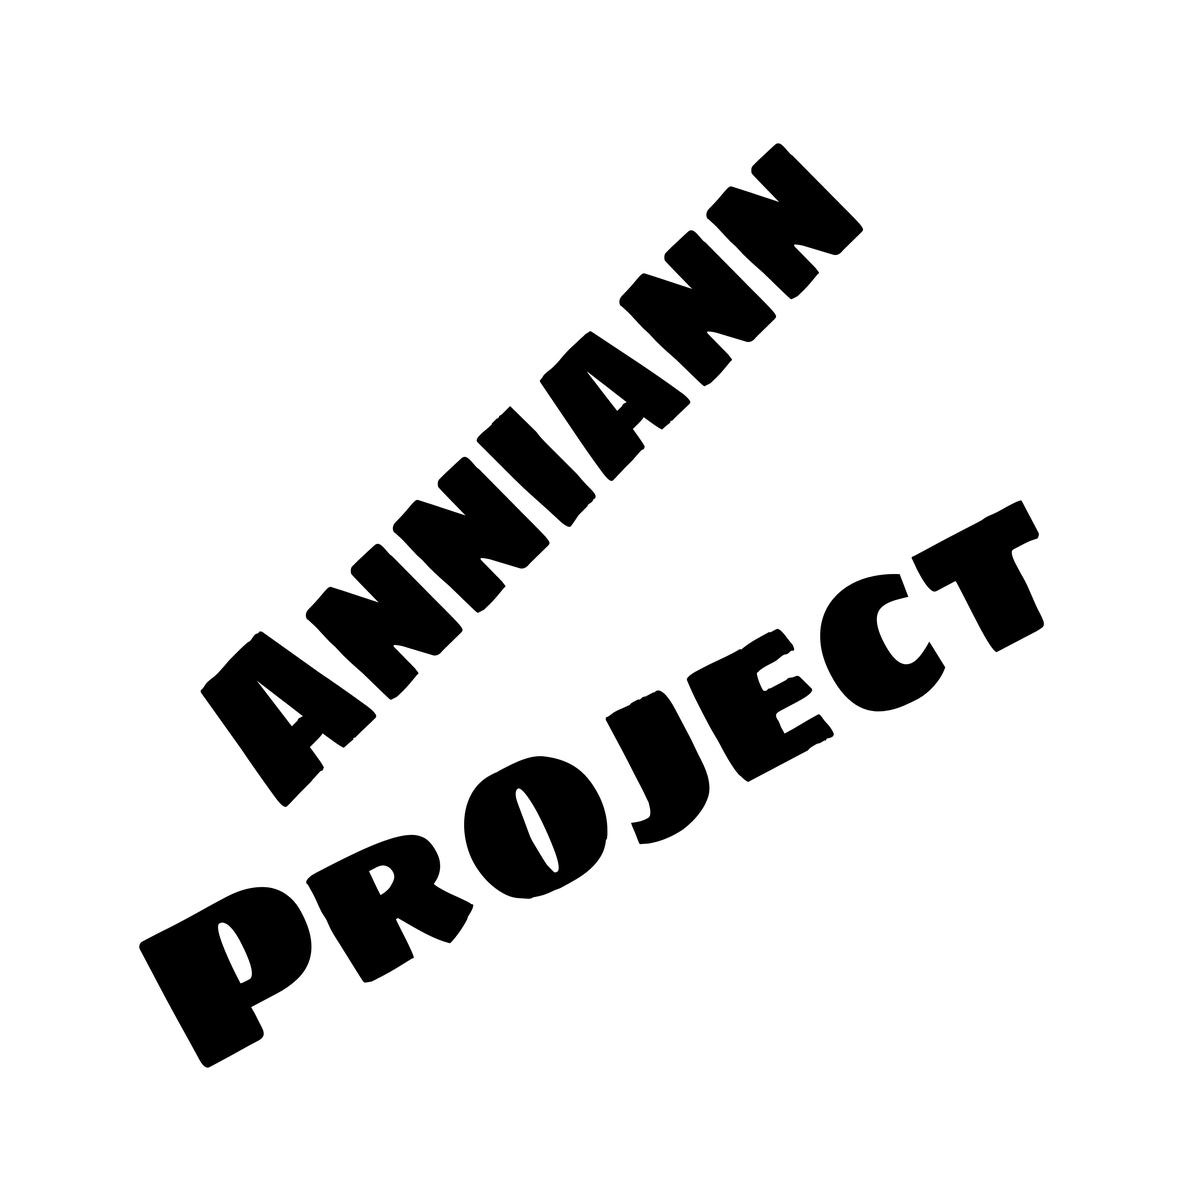 Anniann Project